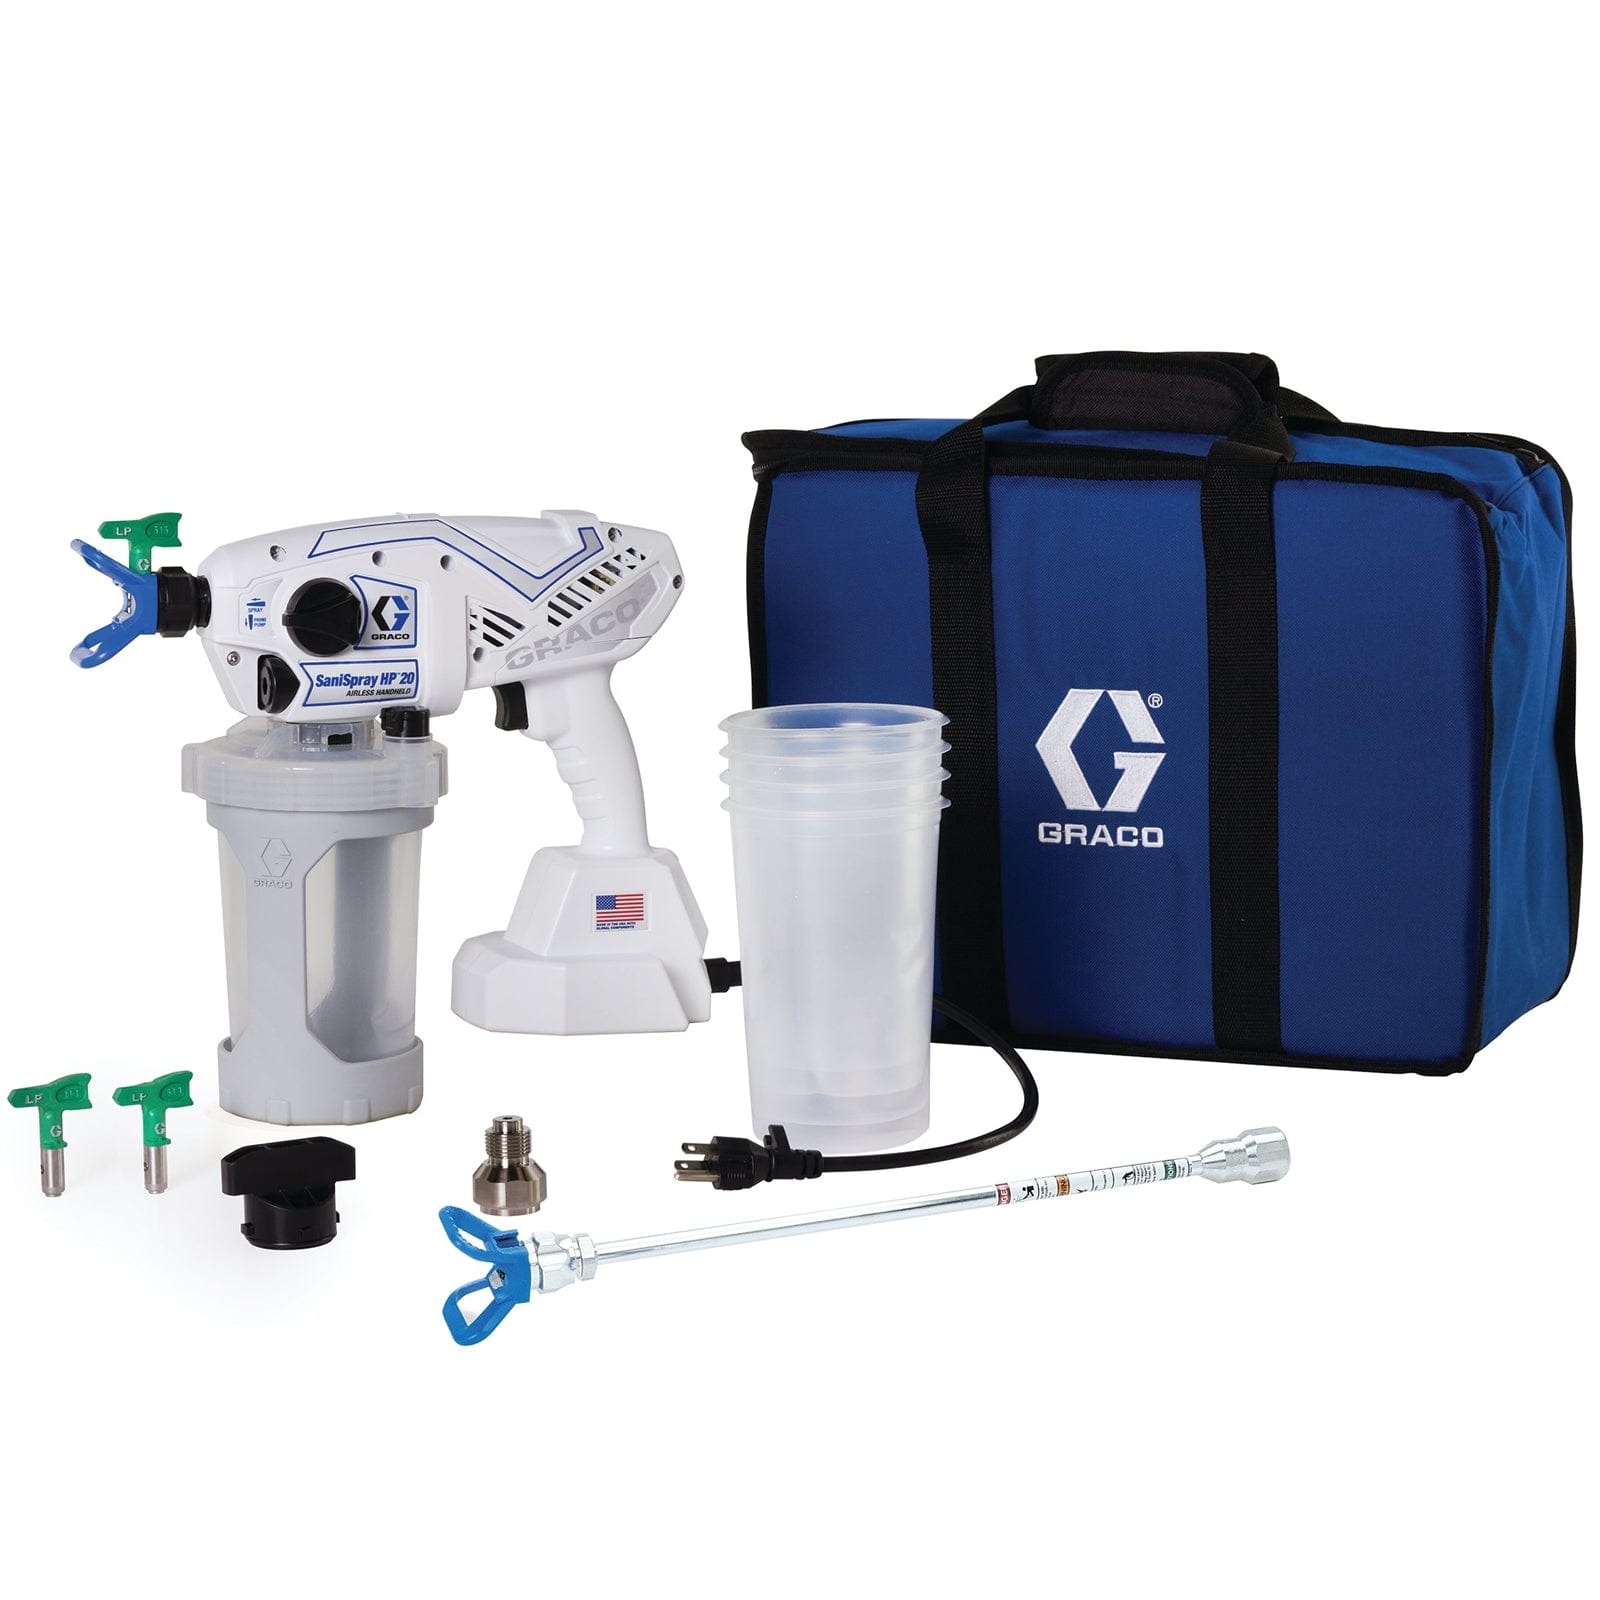 Sprayer Equipment & Accessories